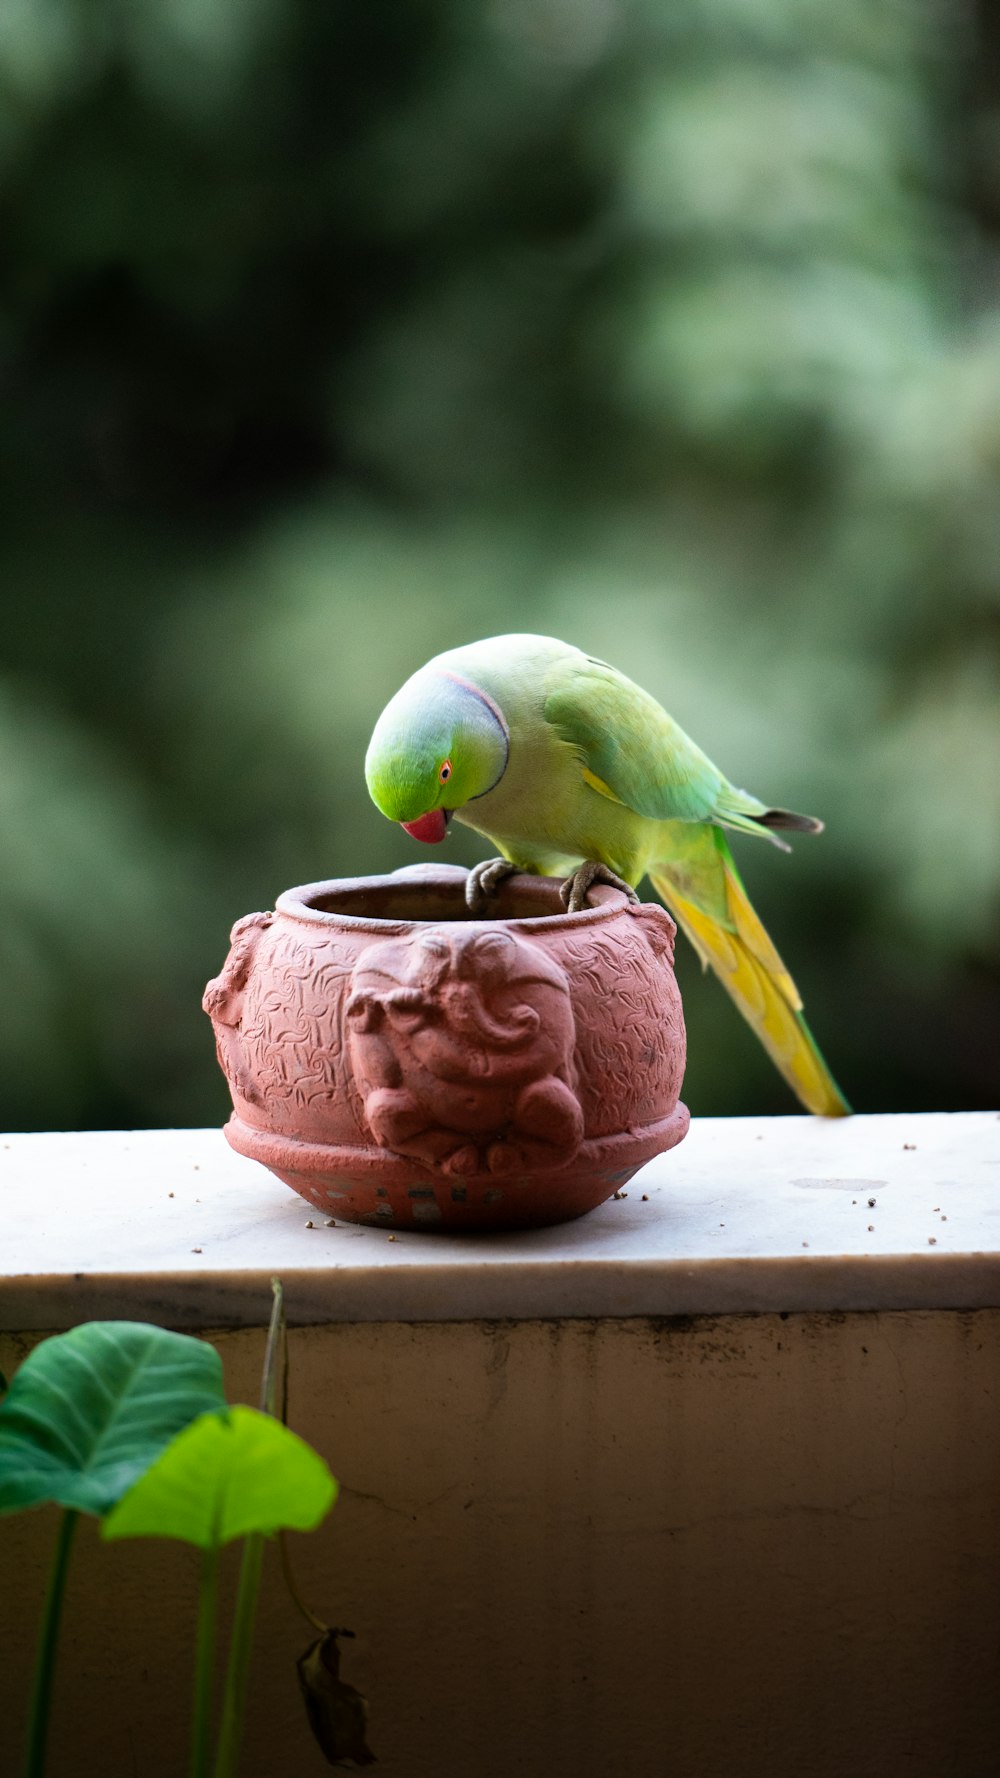 un oiseau vert assis au sommet d’une plante en pot